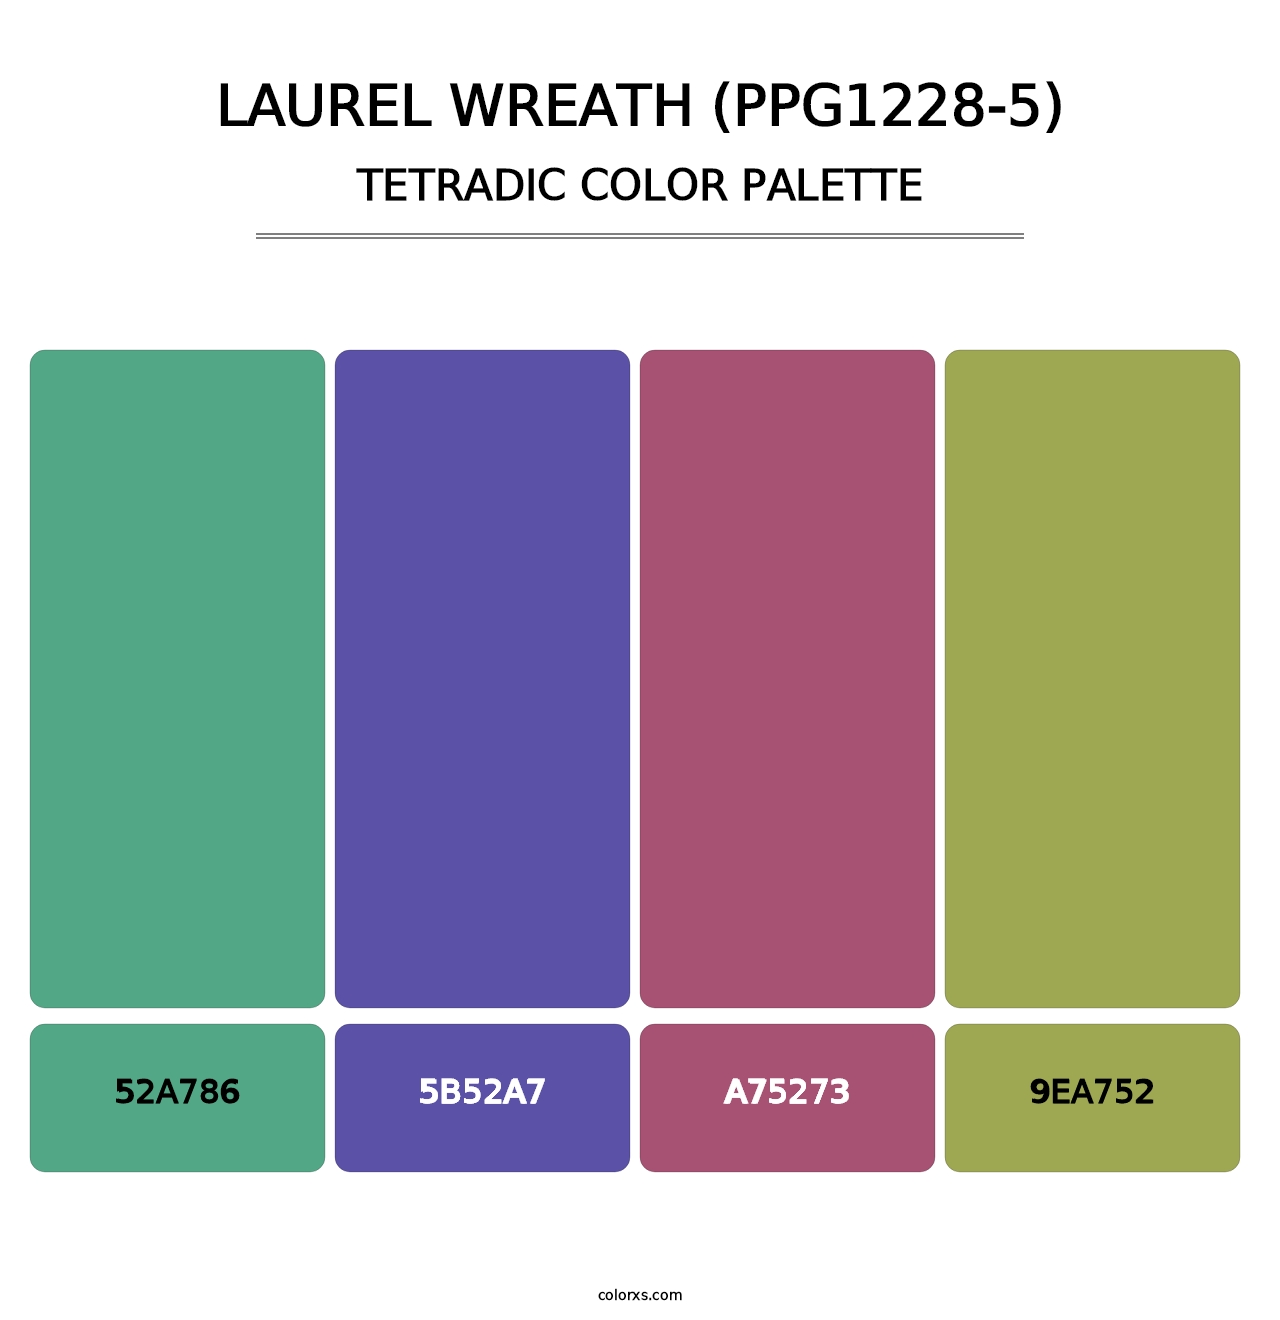 Laurel Wreath (PPG1228-5) - Tetradic Color Palette